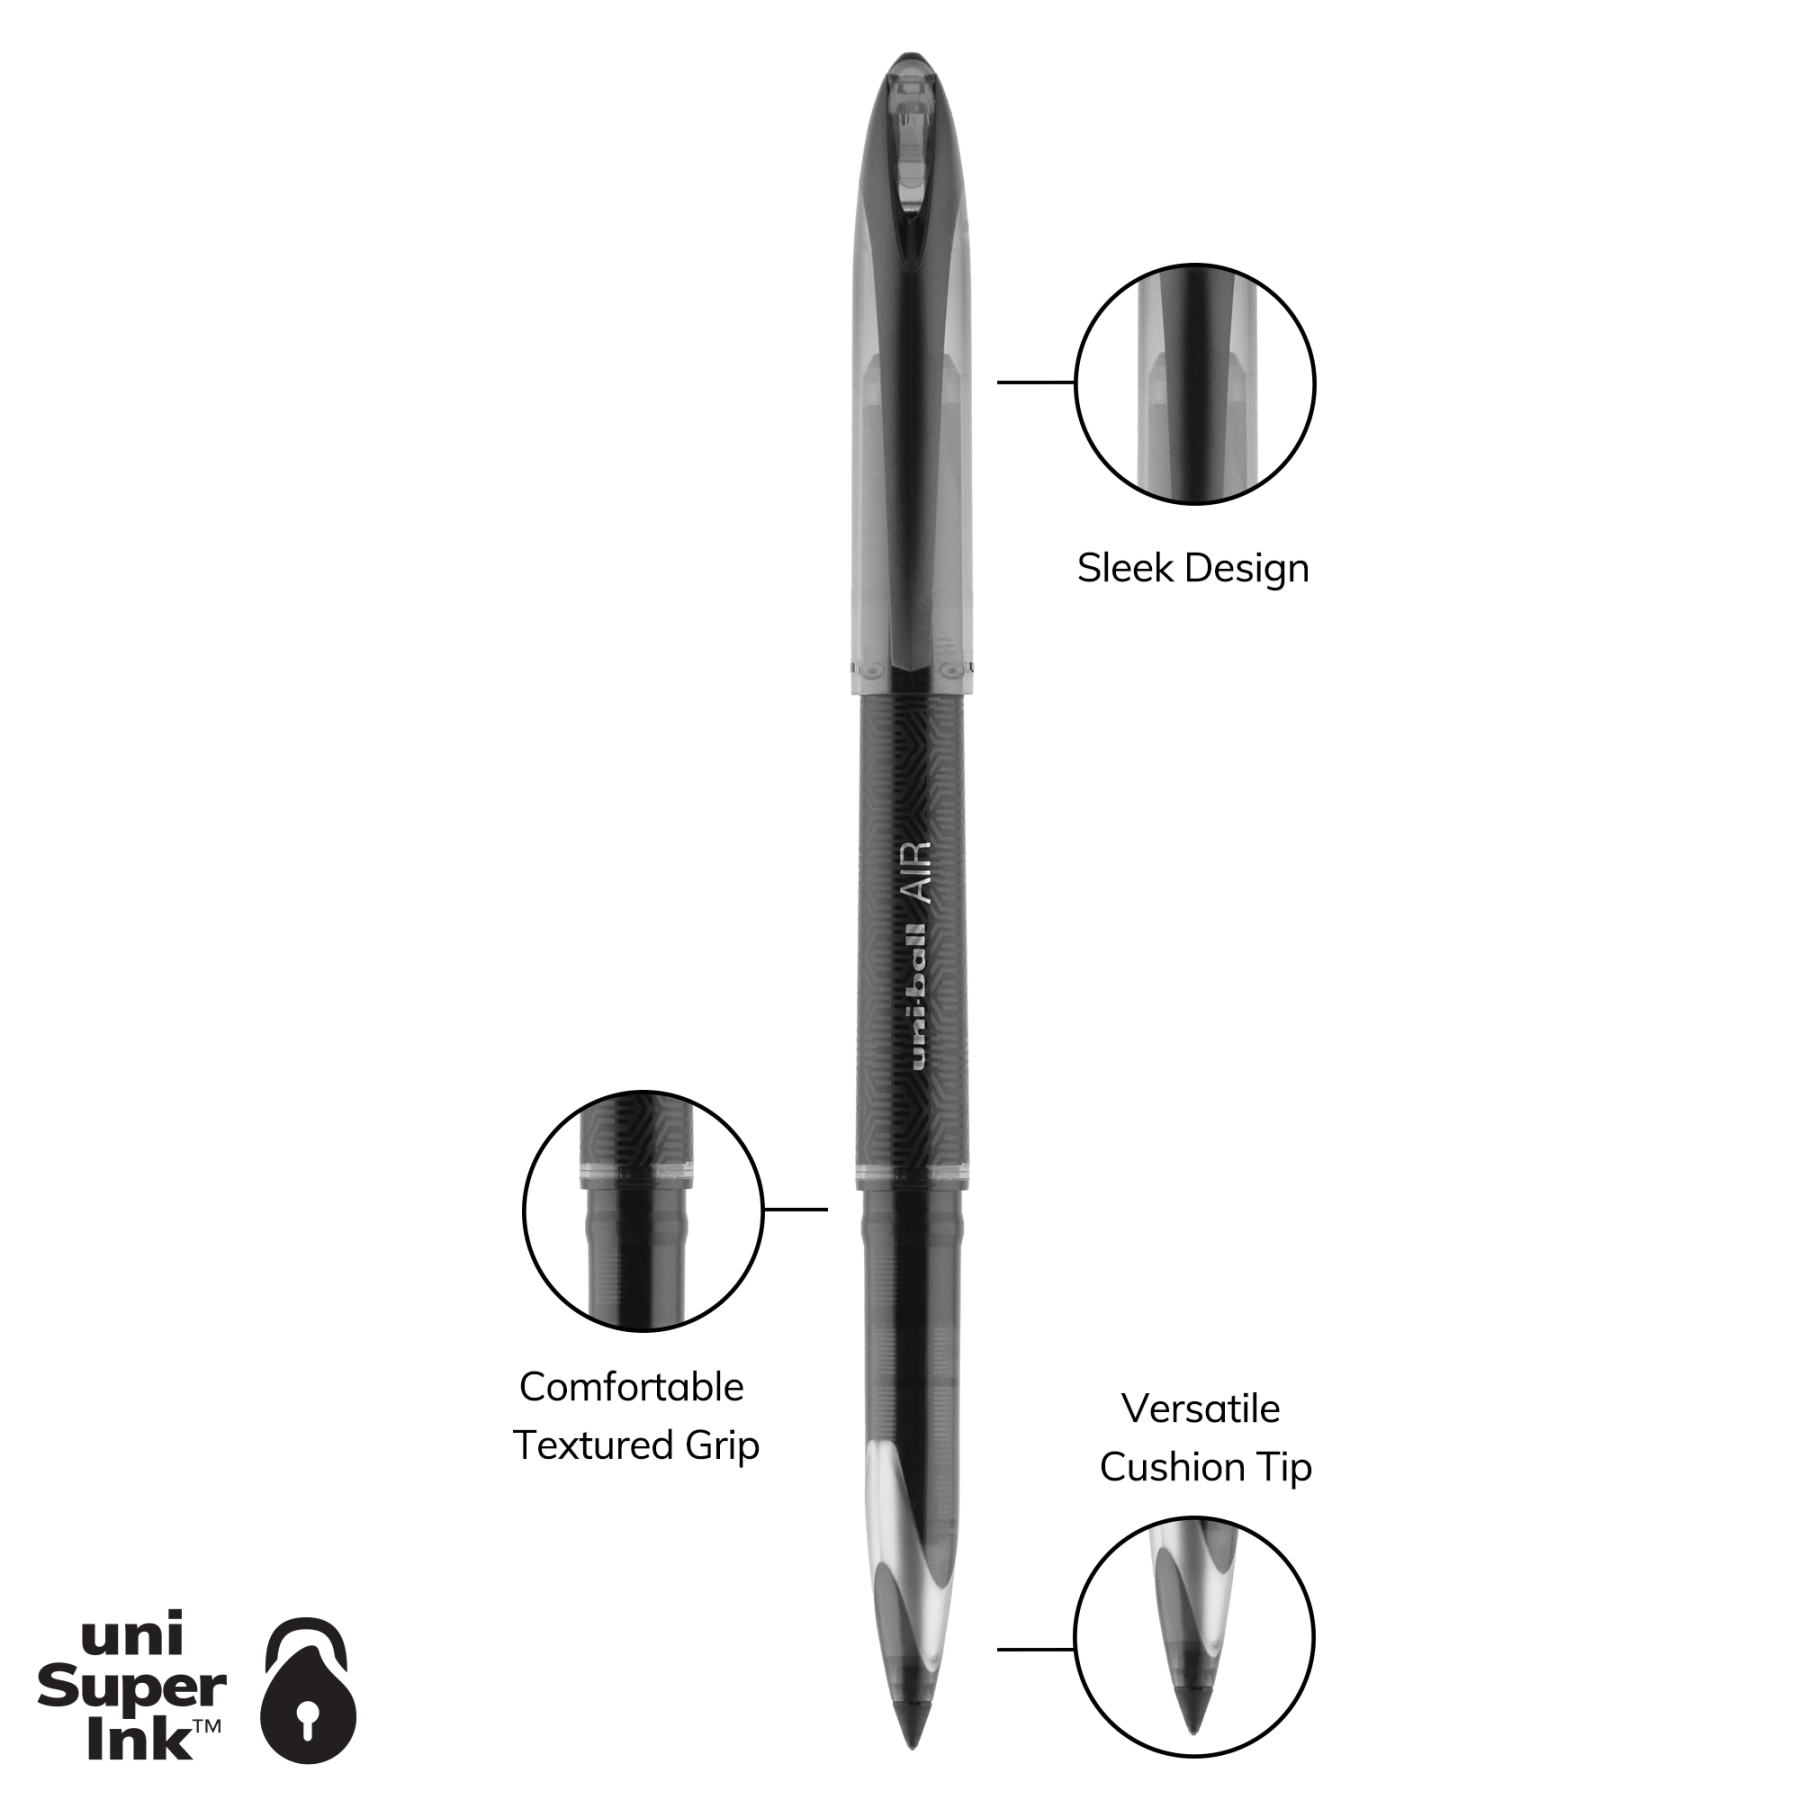 uniball™ AIR, Porous Point Pen